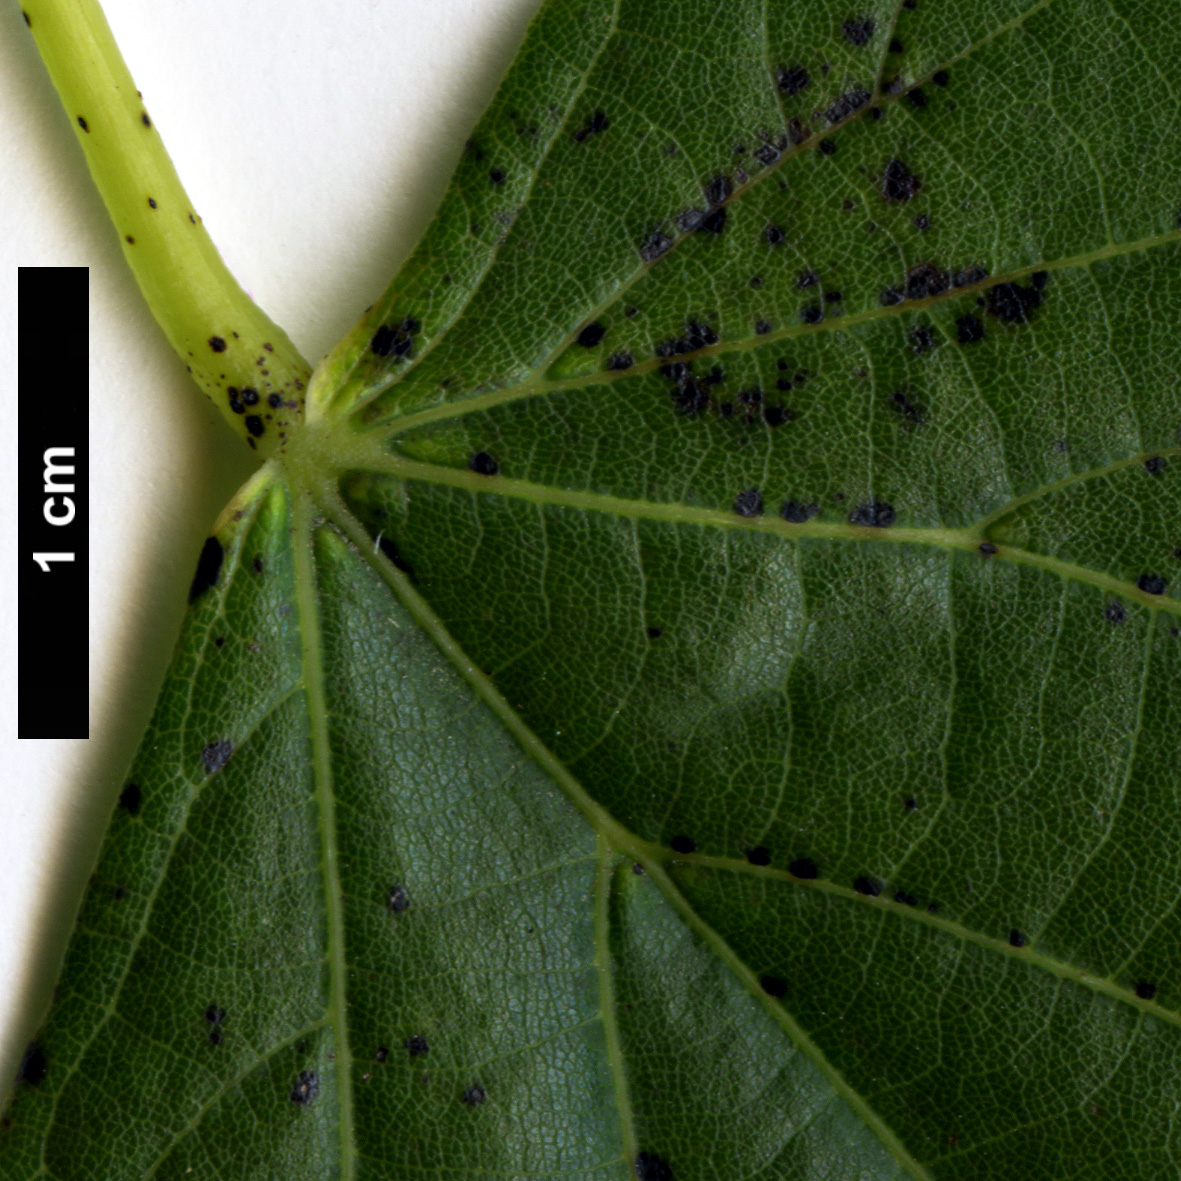 High resolution image: Family: Malvaceae - Genus: Tilia - Taxon: chinensis - SpeciesSub: var. investita